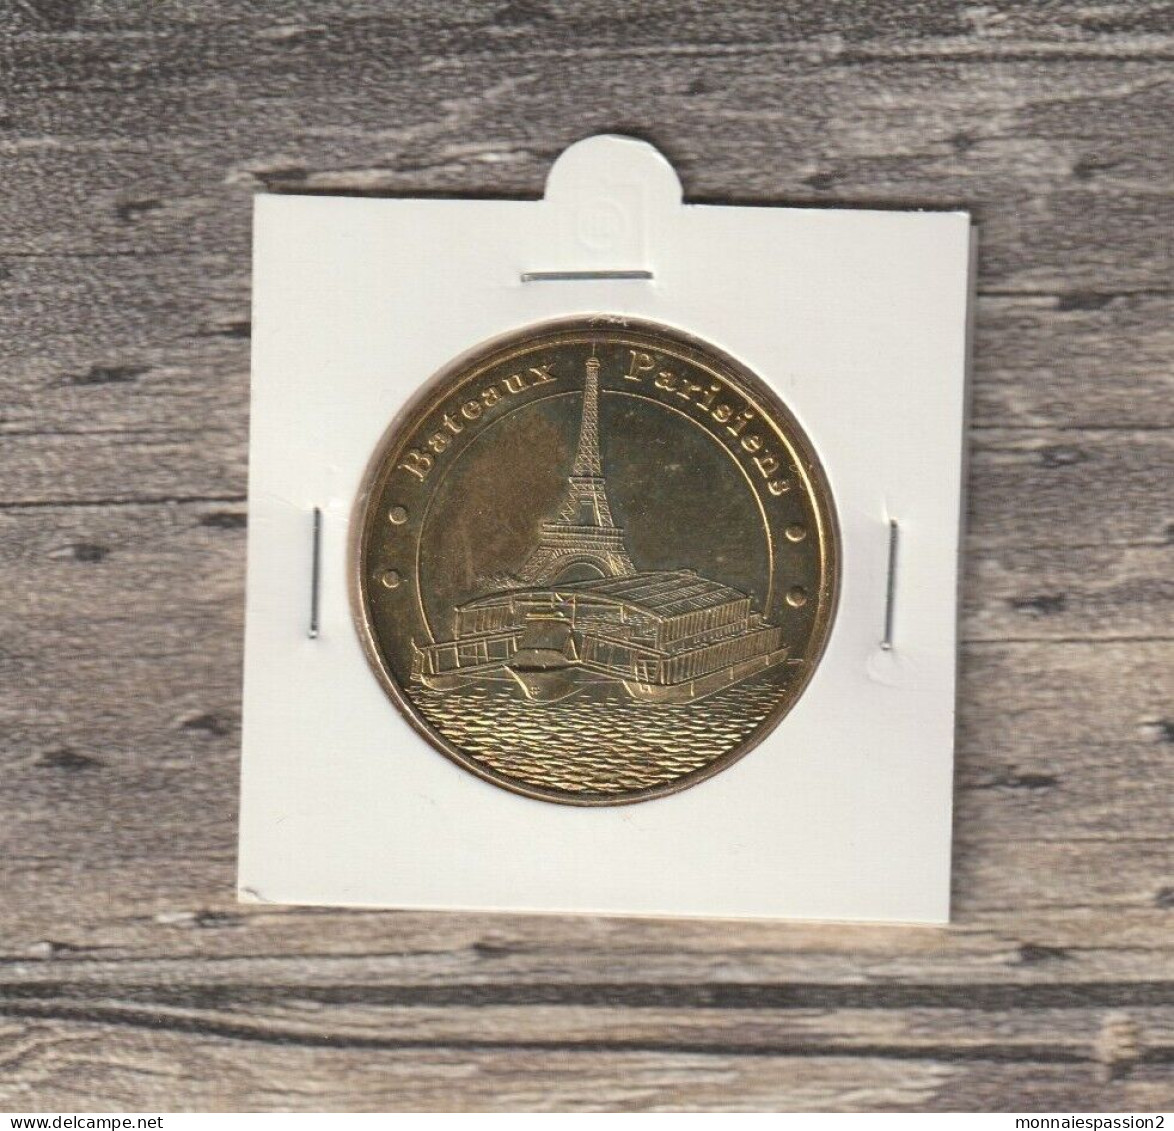 Monnaie De Paris : Bateaux Parisiens - 2011 - 2011